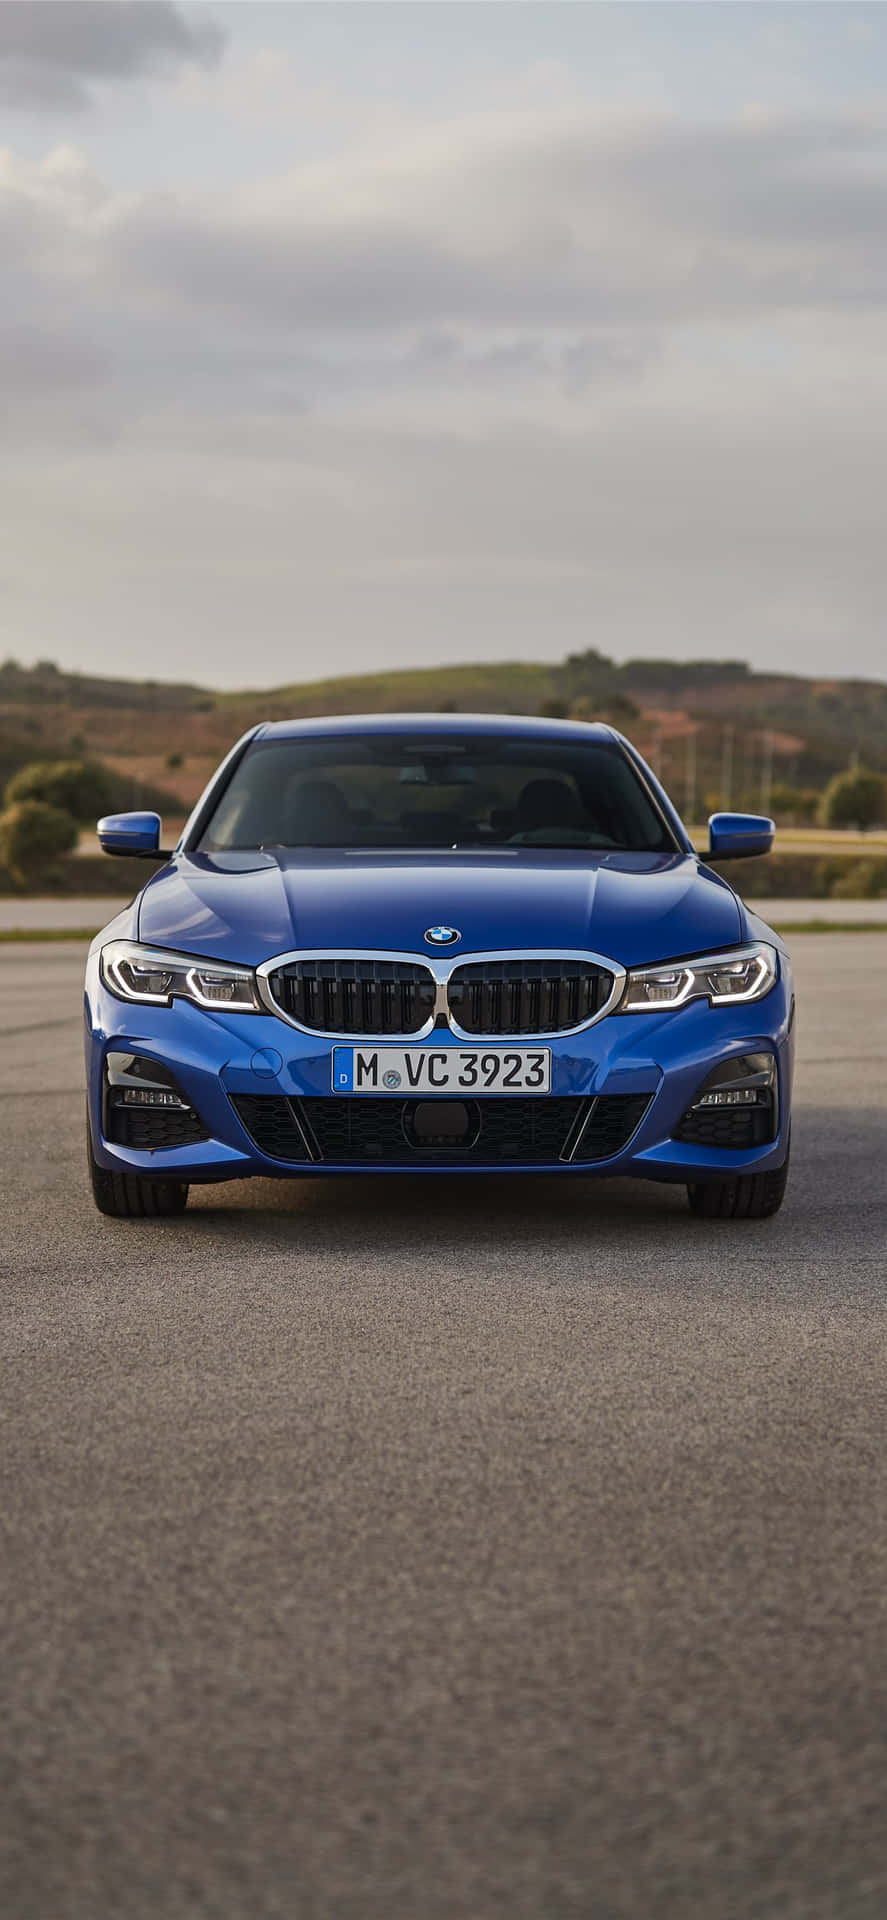 Den blå BMW 4-serie sedan kører ned ad vejen Wallpaper